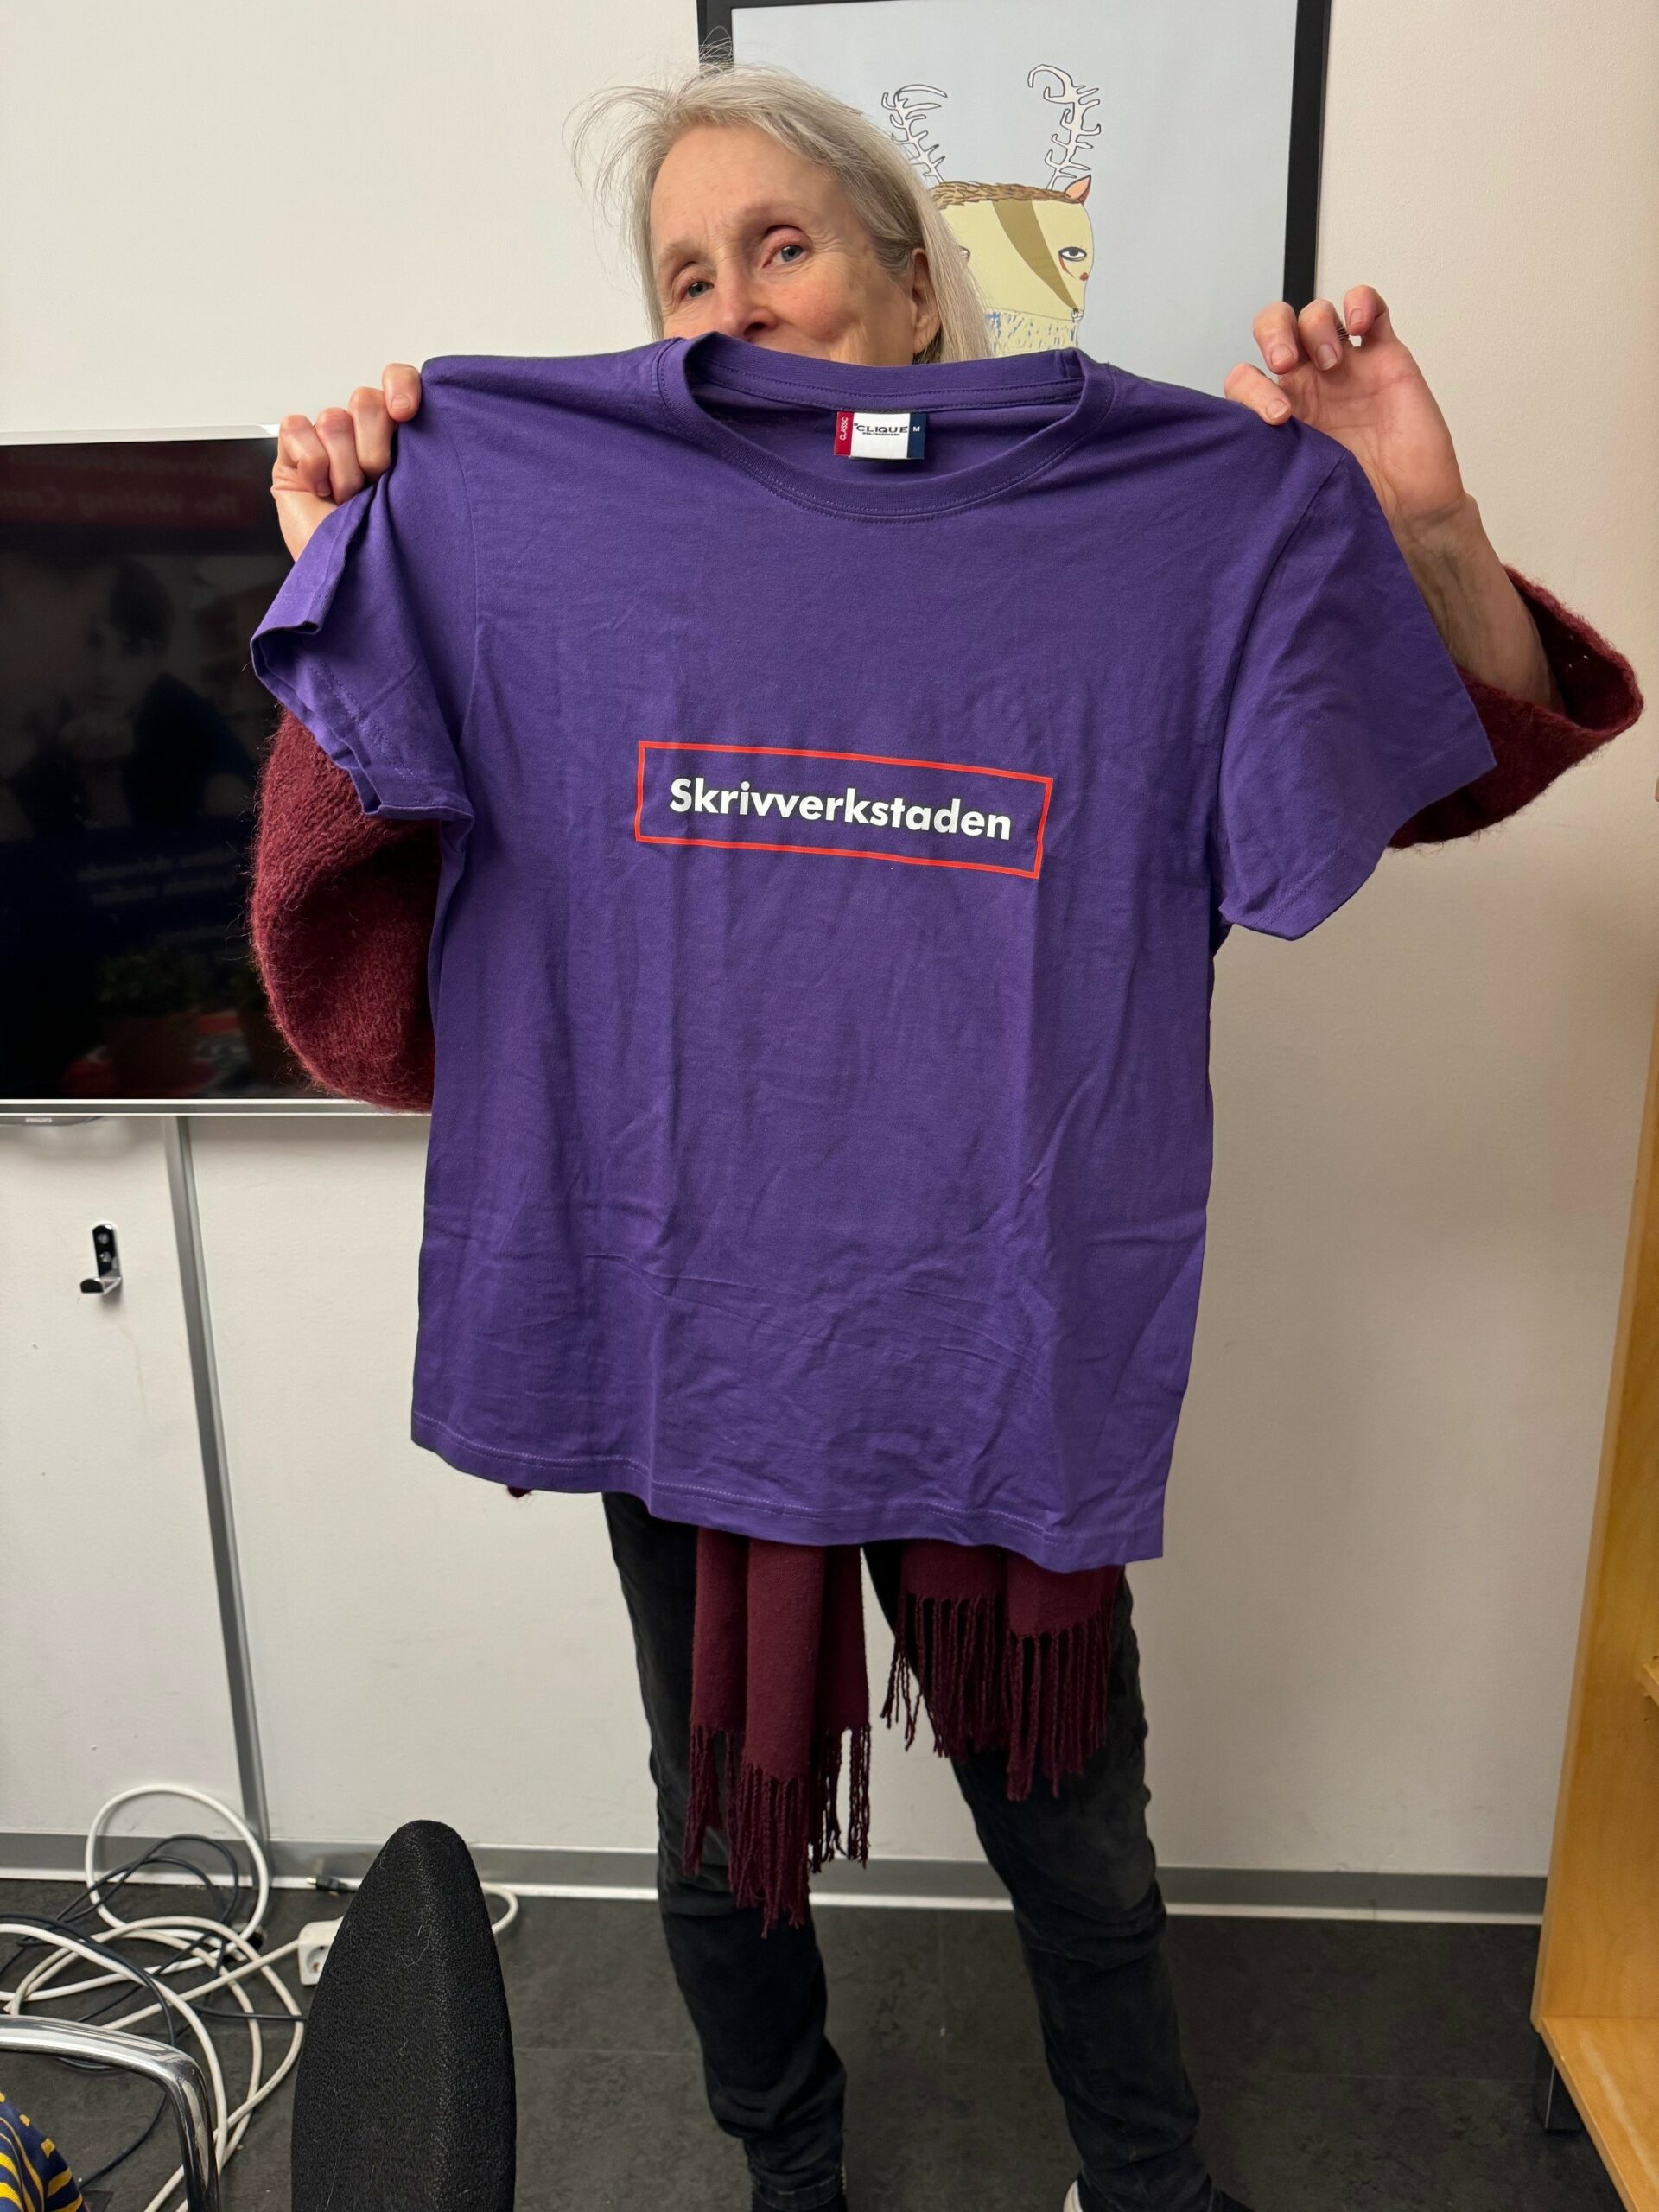 Frau hät ein lilafarbenes T-Shirt mit der Aufschrift "Skrivverkstaden" (dt. Schreibwerkstatt) hoch.